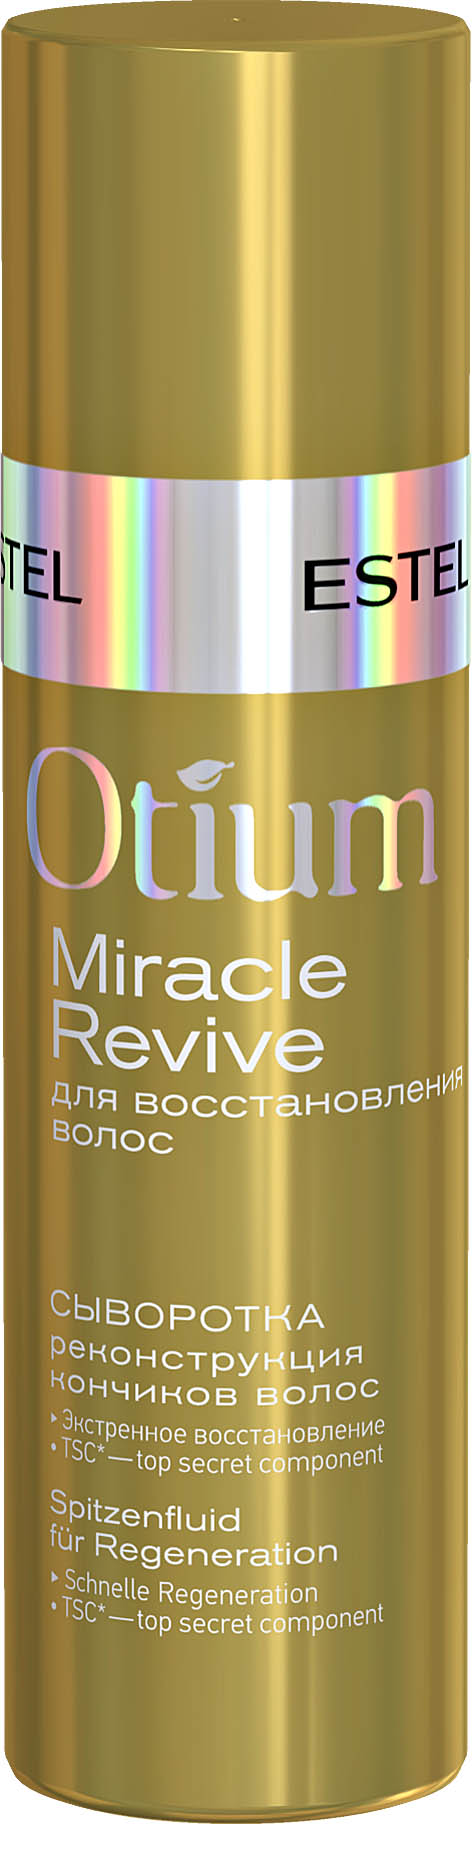 Сыворотка "Реконструкция кончиков волос" OTIUM MIRACLE REVIVE, 100 мл